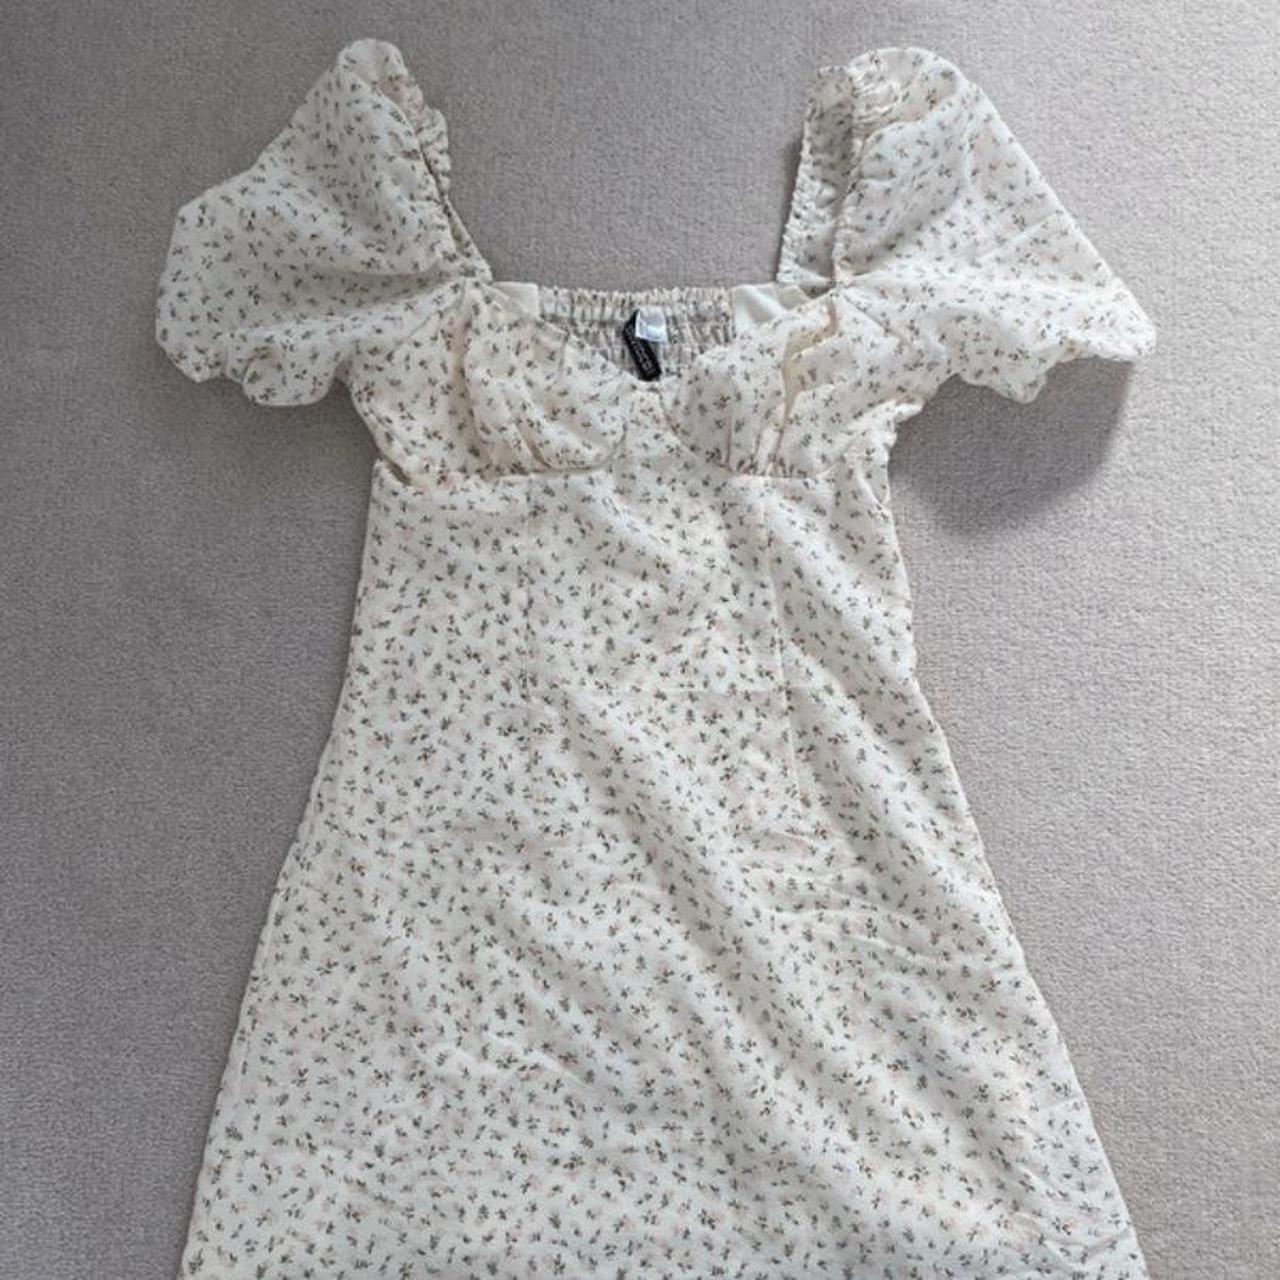 ditsy floral babydoll dress 🌸never worn however... - Depop